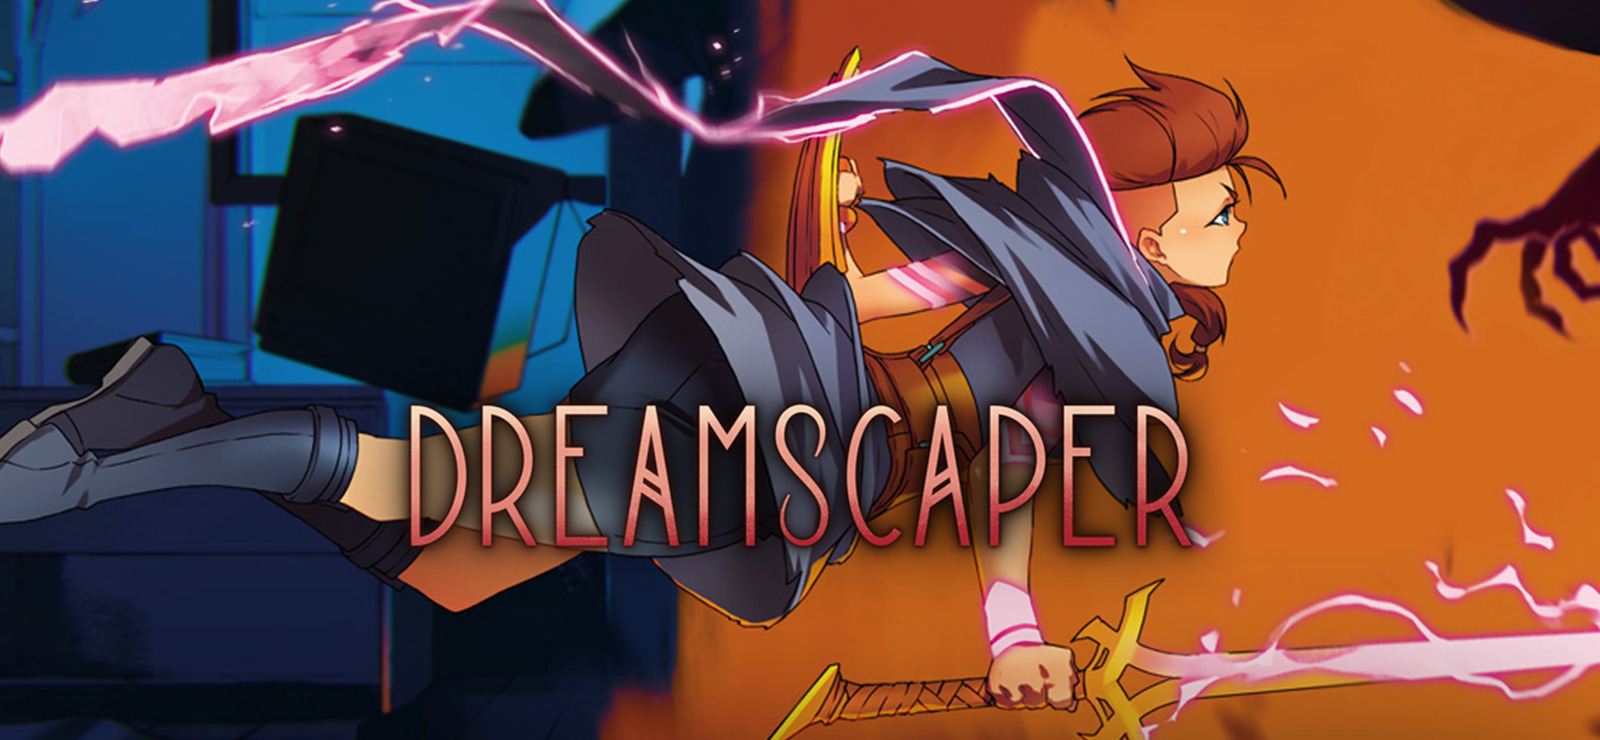 Dreamscaper free downloads